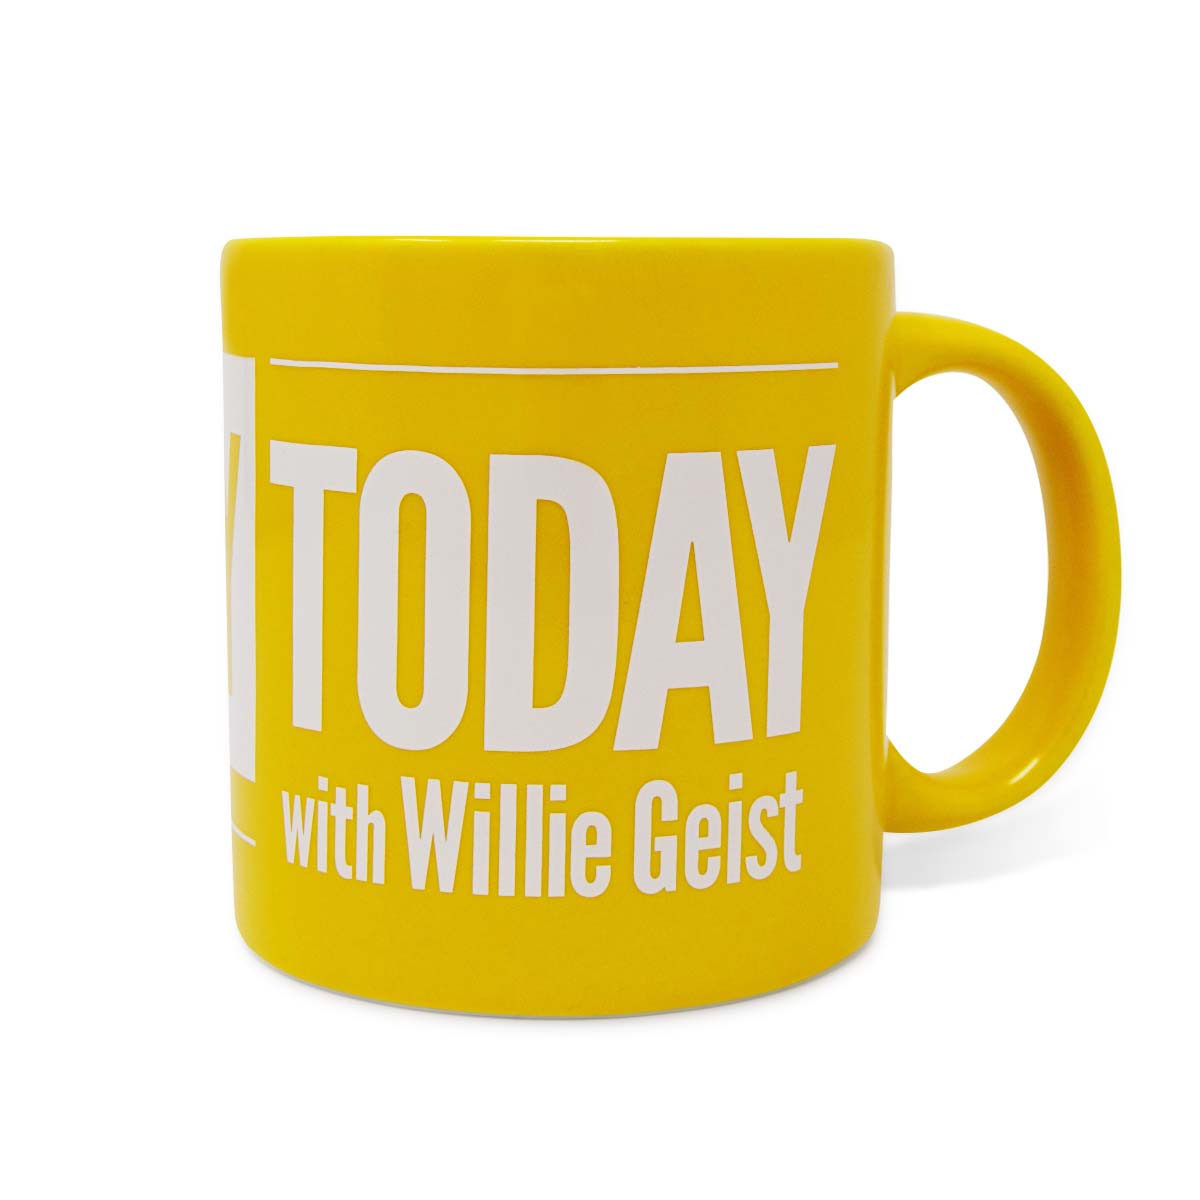 Sunday TODAY with Willie Geist Ceramic Mug